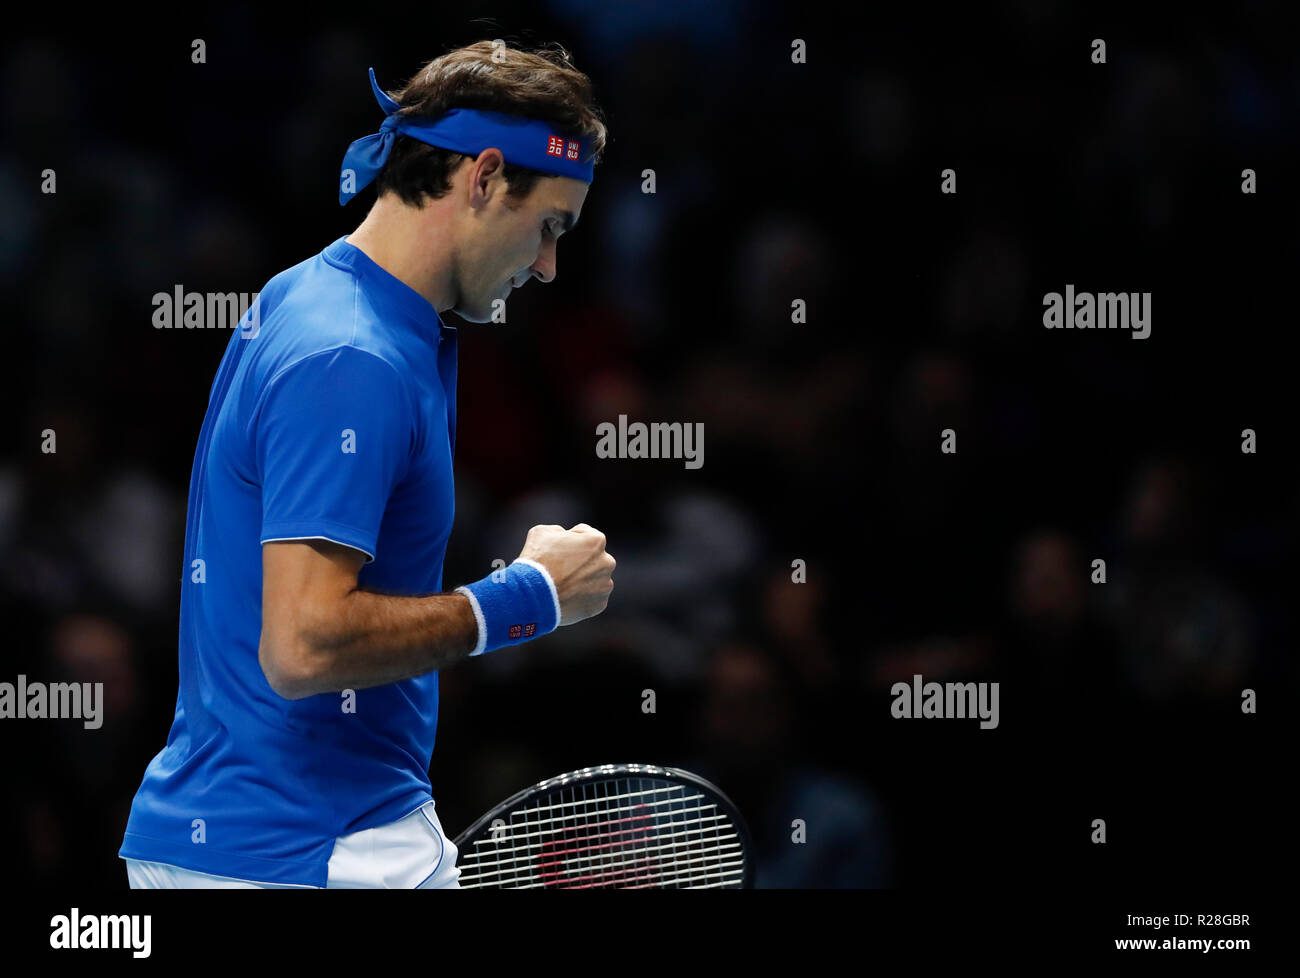 Londres, Royaume-Uni. 17 novembre, 2018. Roger Federer Suisse réagit au cours de la demi-finale contre des célibataires Alexander Zverev de l'Allemagne durant la journée 7 de la Nitto 2018 ATP World Tour finals à l'O2 Arena de Londres, Grande-Bretagne, le 17 novembre 2018. Roger Federer a perdu 0-2. Credit : Han Yan/Xinhua/Alamy Live News Banque D'Images